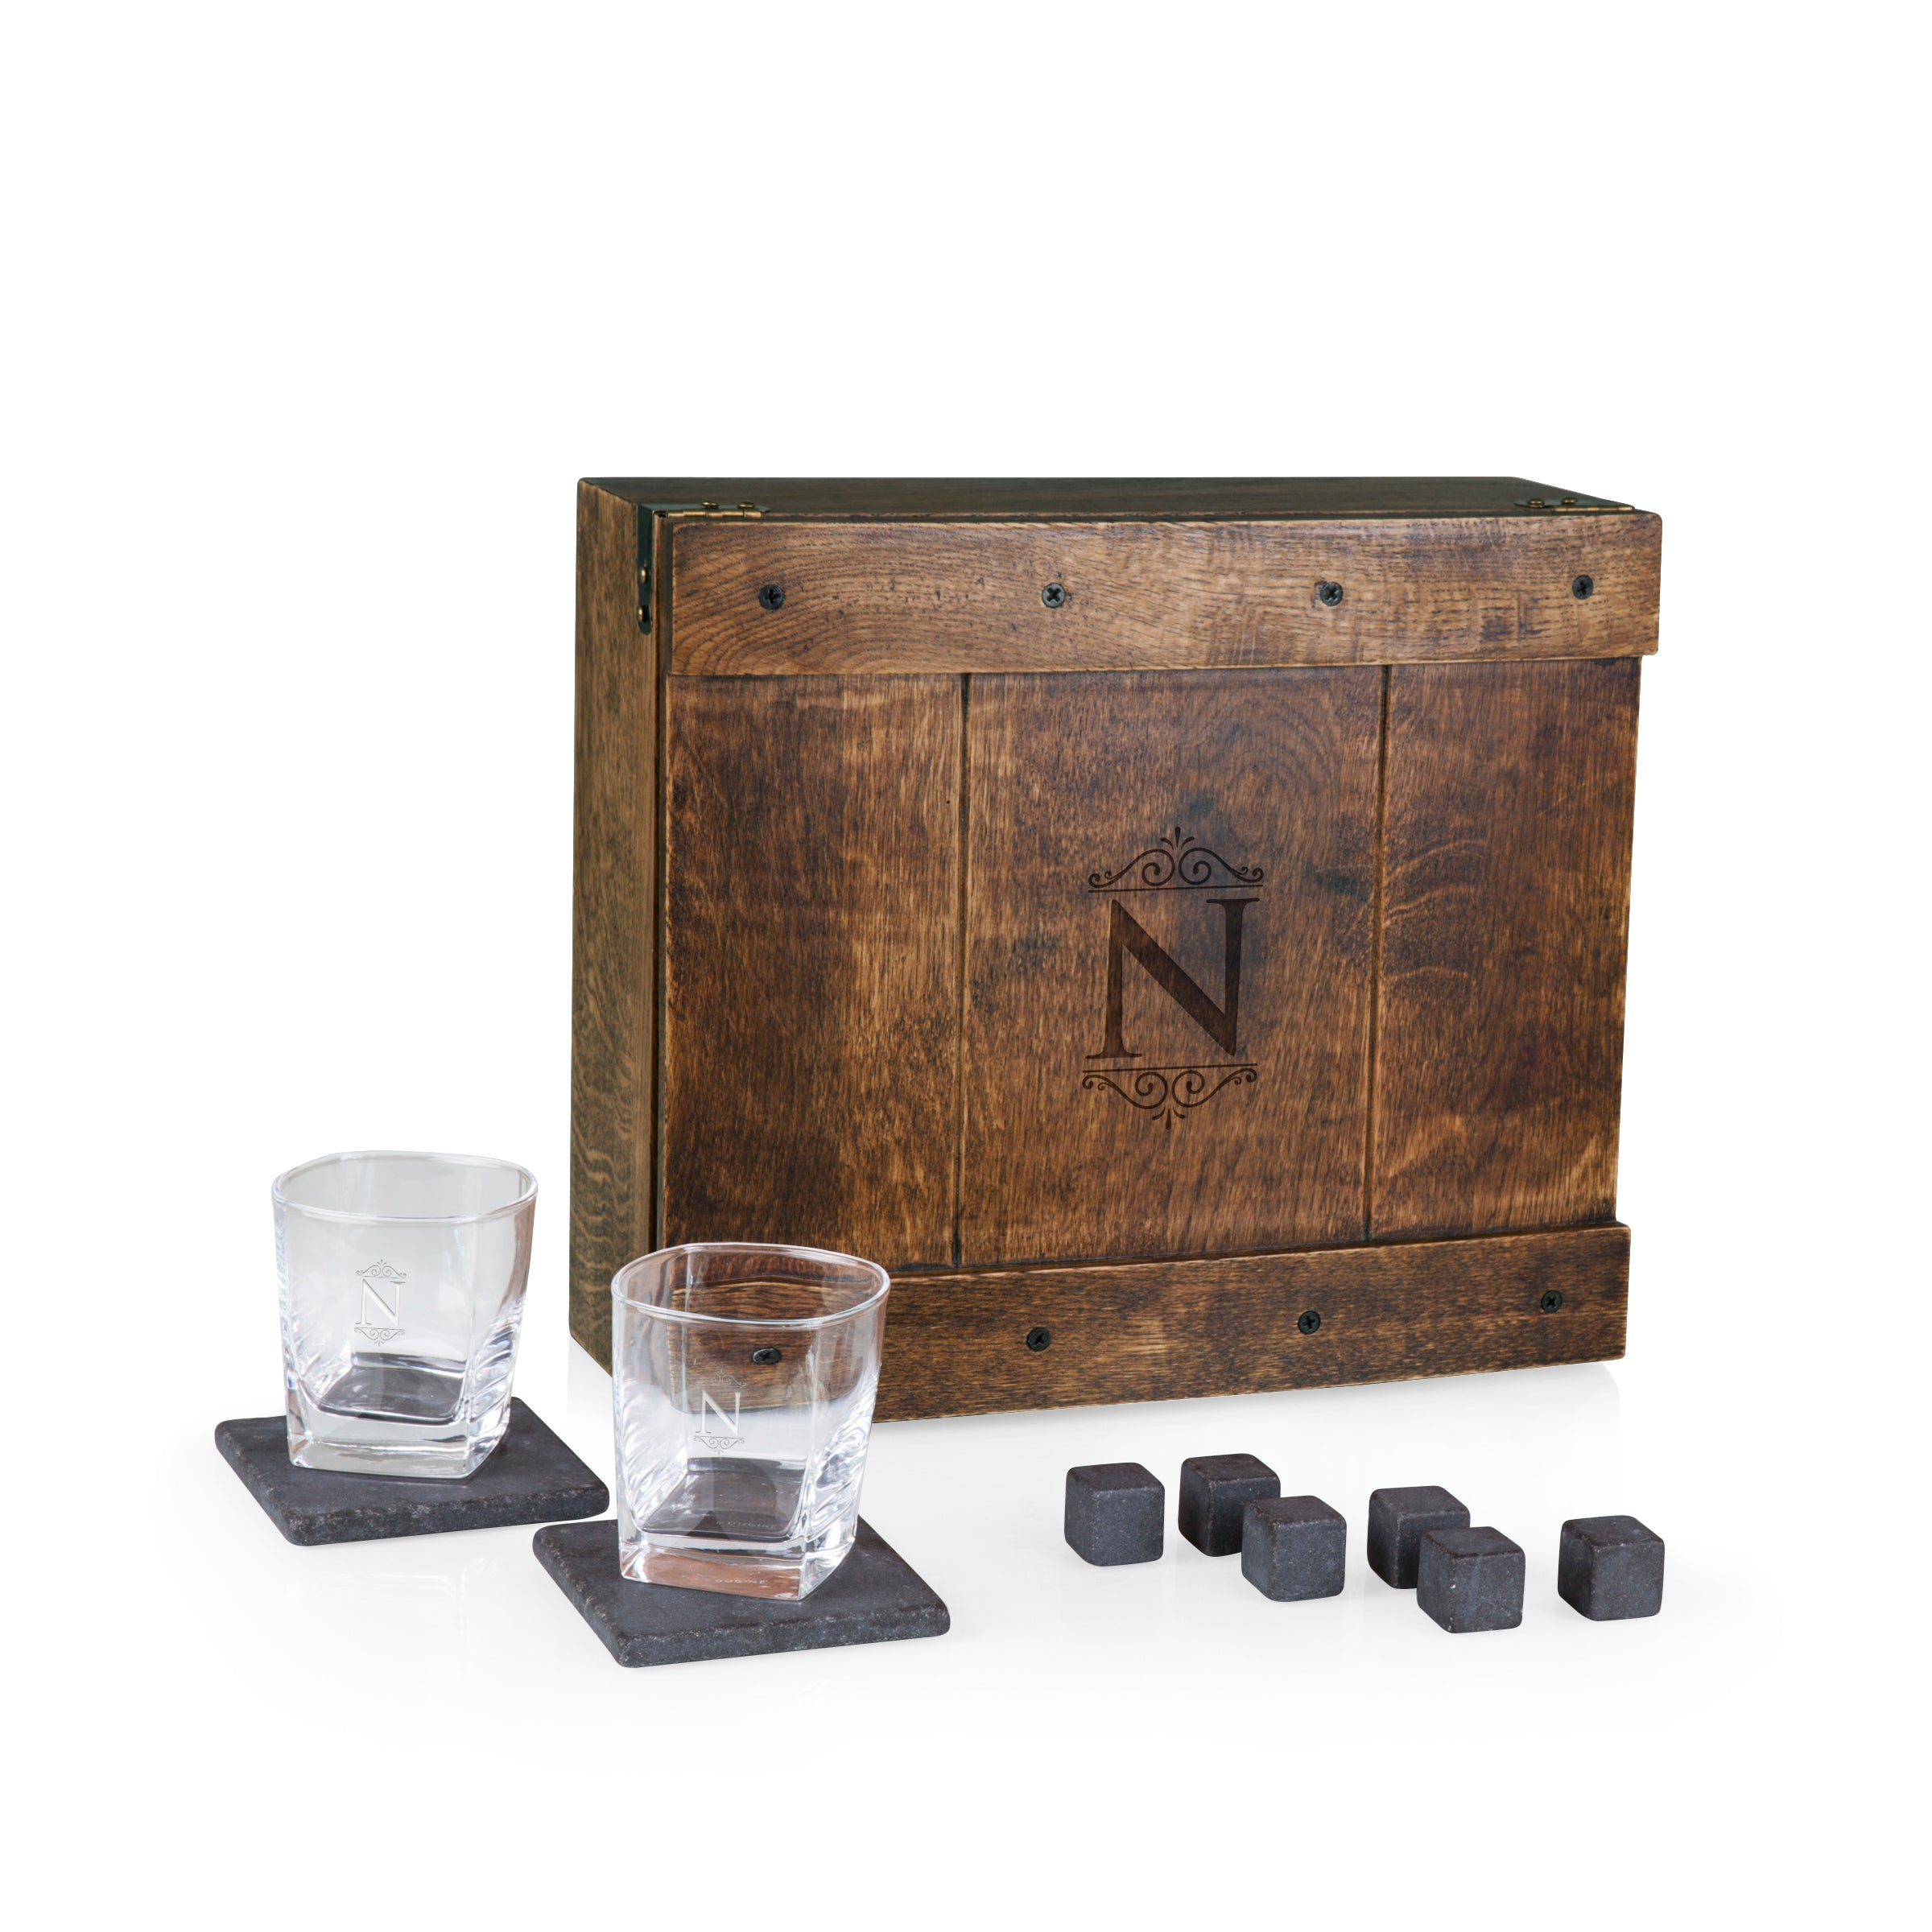 Monogram - Whiskey Box Gift Set – PICNIC TIME FAMILY OF BRANDS